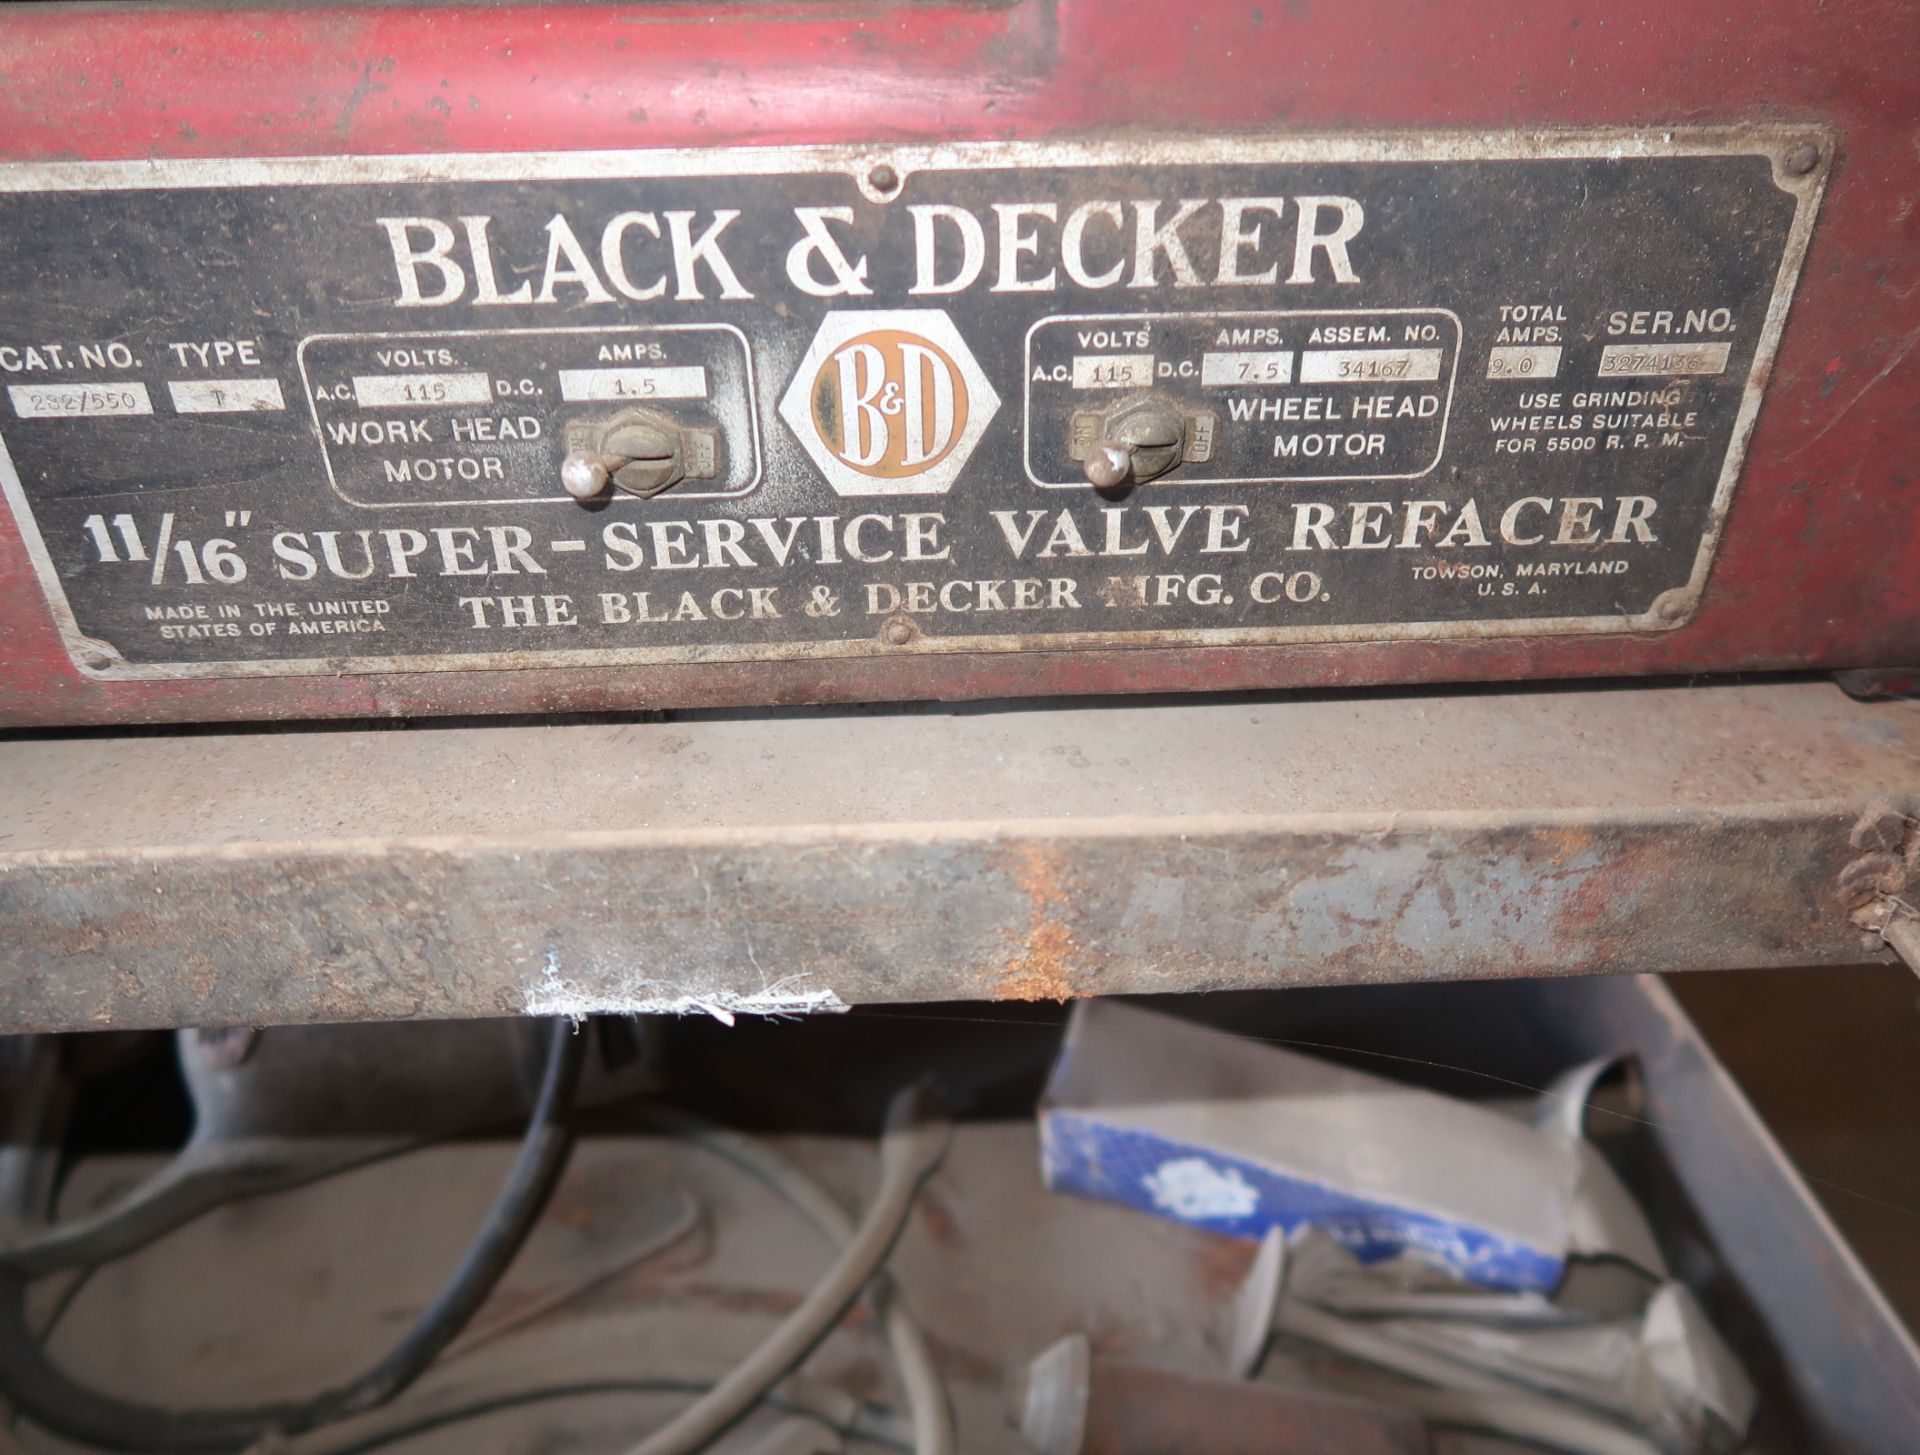 BLACK & DECKER 11/16" VALVE REFACER W/ CART - Image 2 of 2